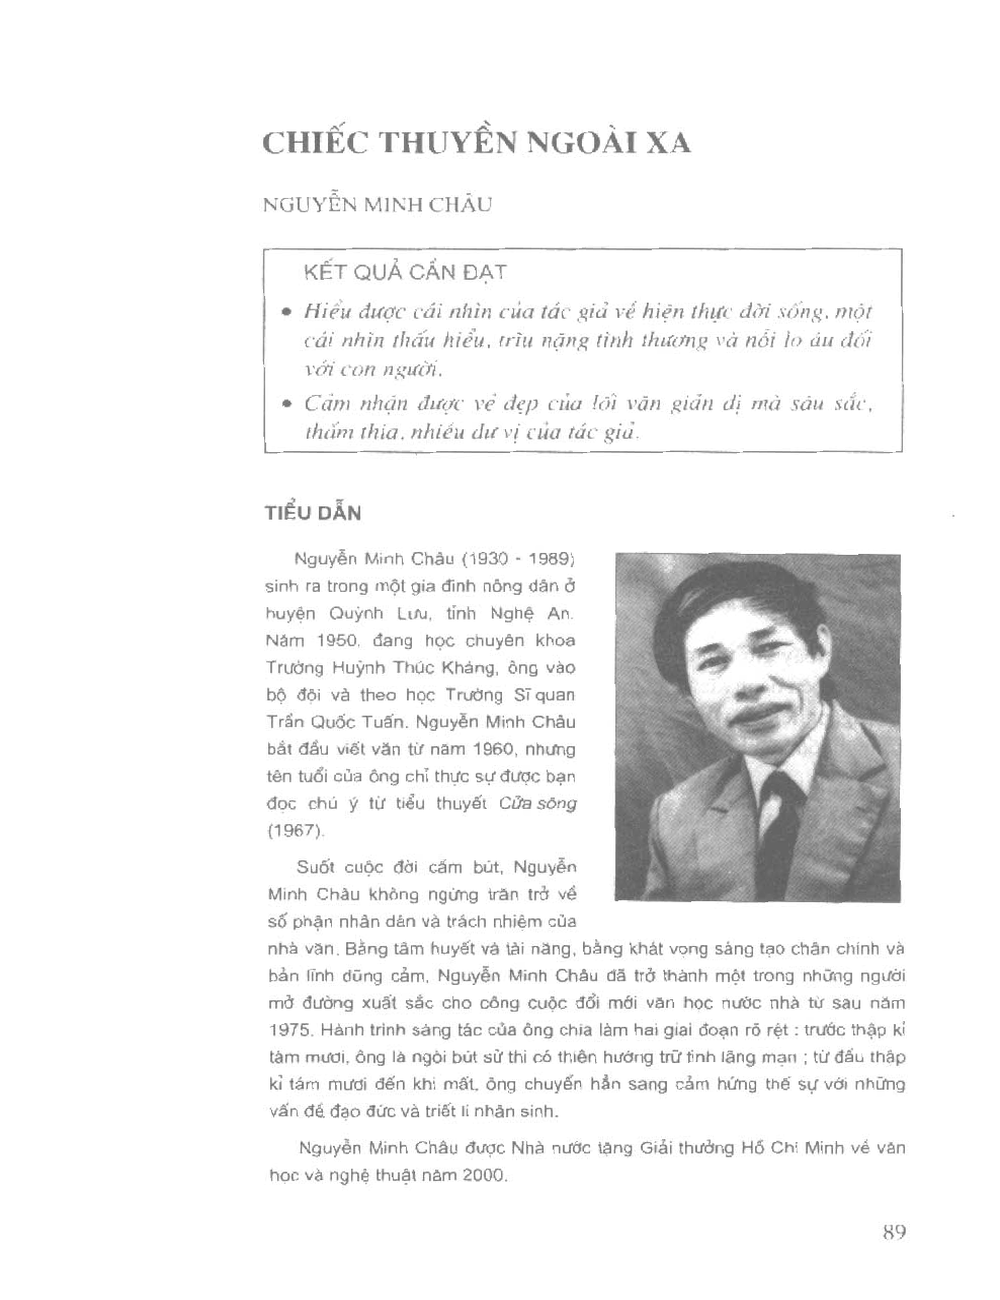 chiec thuyen ngoai xa cua nguyen minh chau 1 - Nguyễn Minh Châu: Khi tài năng đi cùng tấm lòng trên từng trang viết